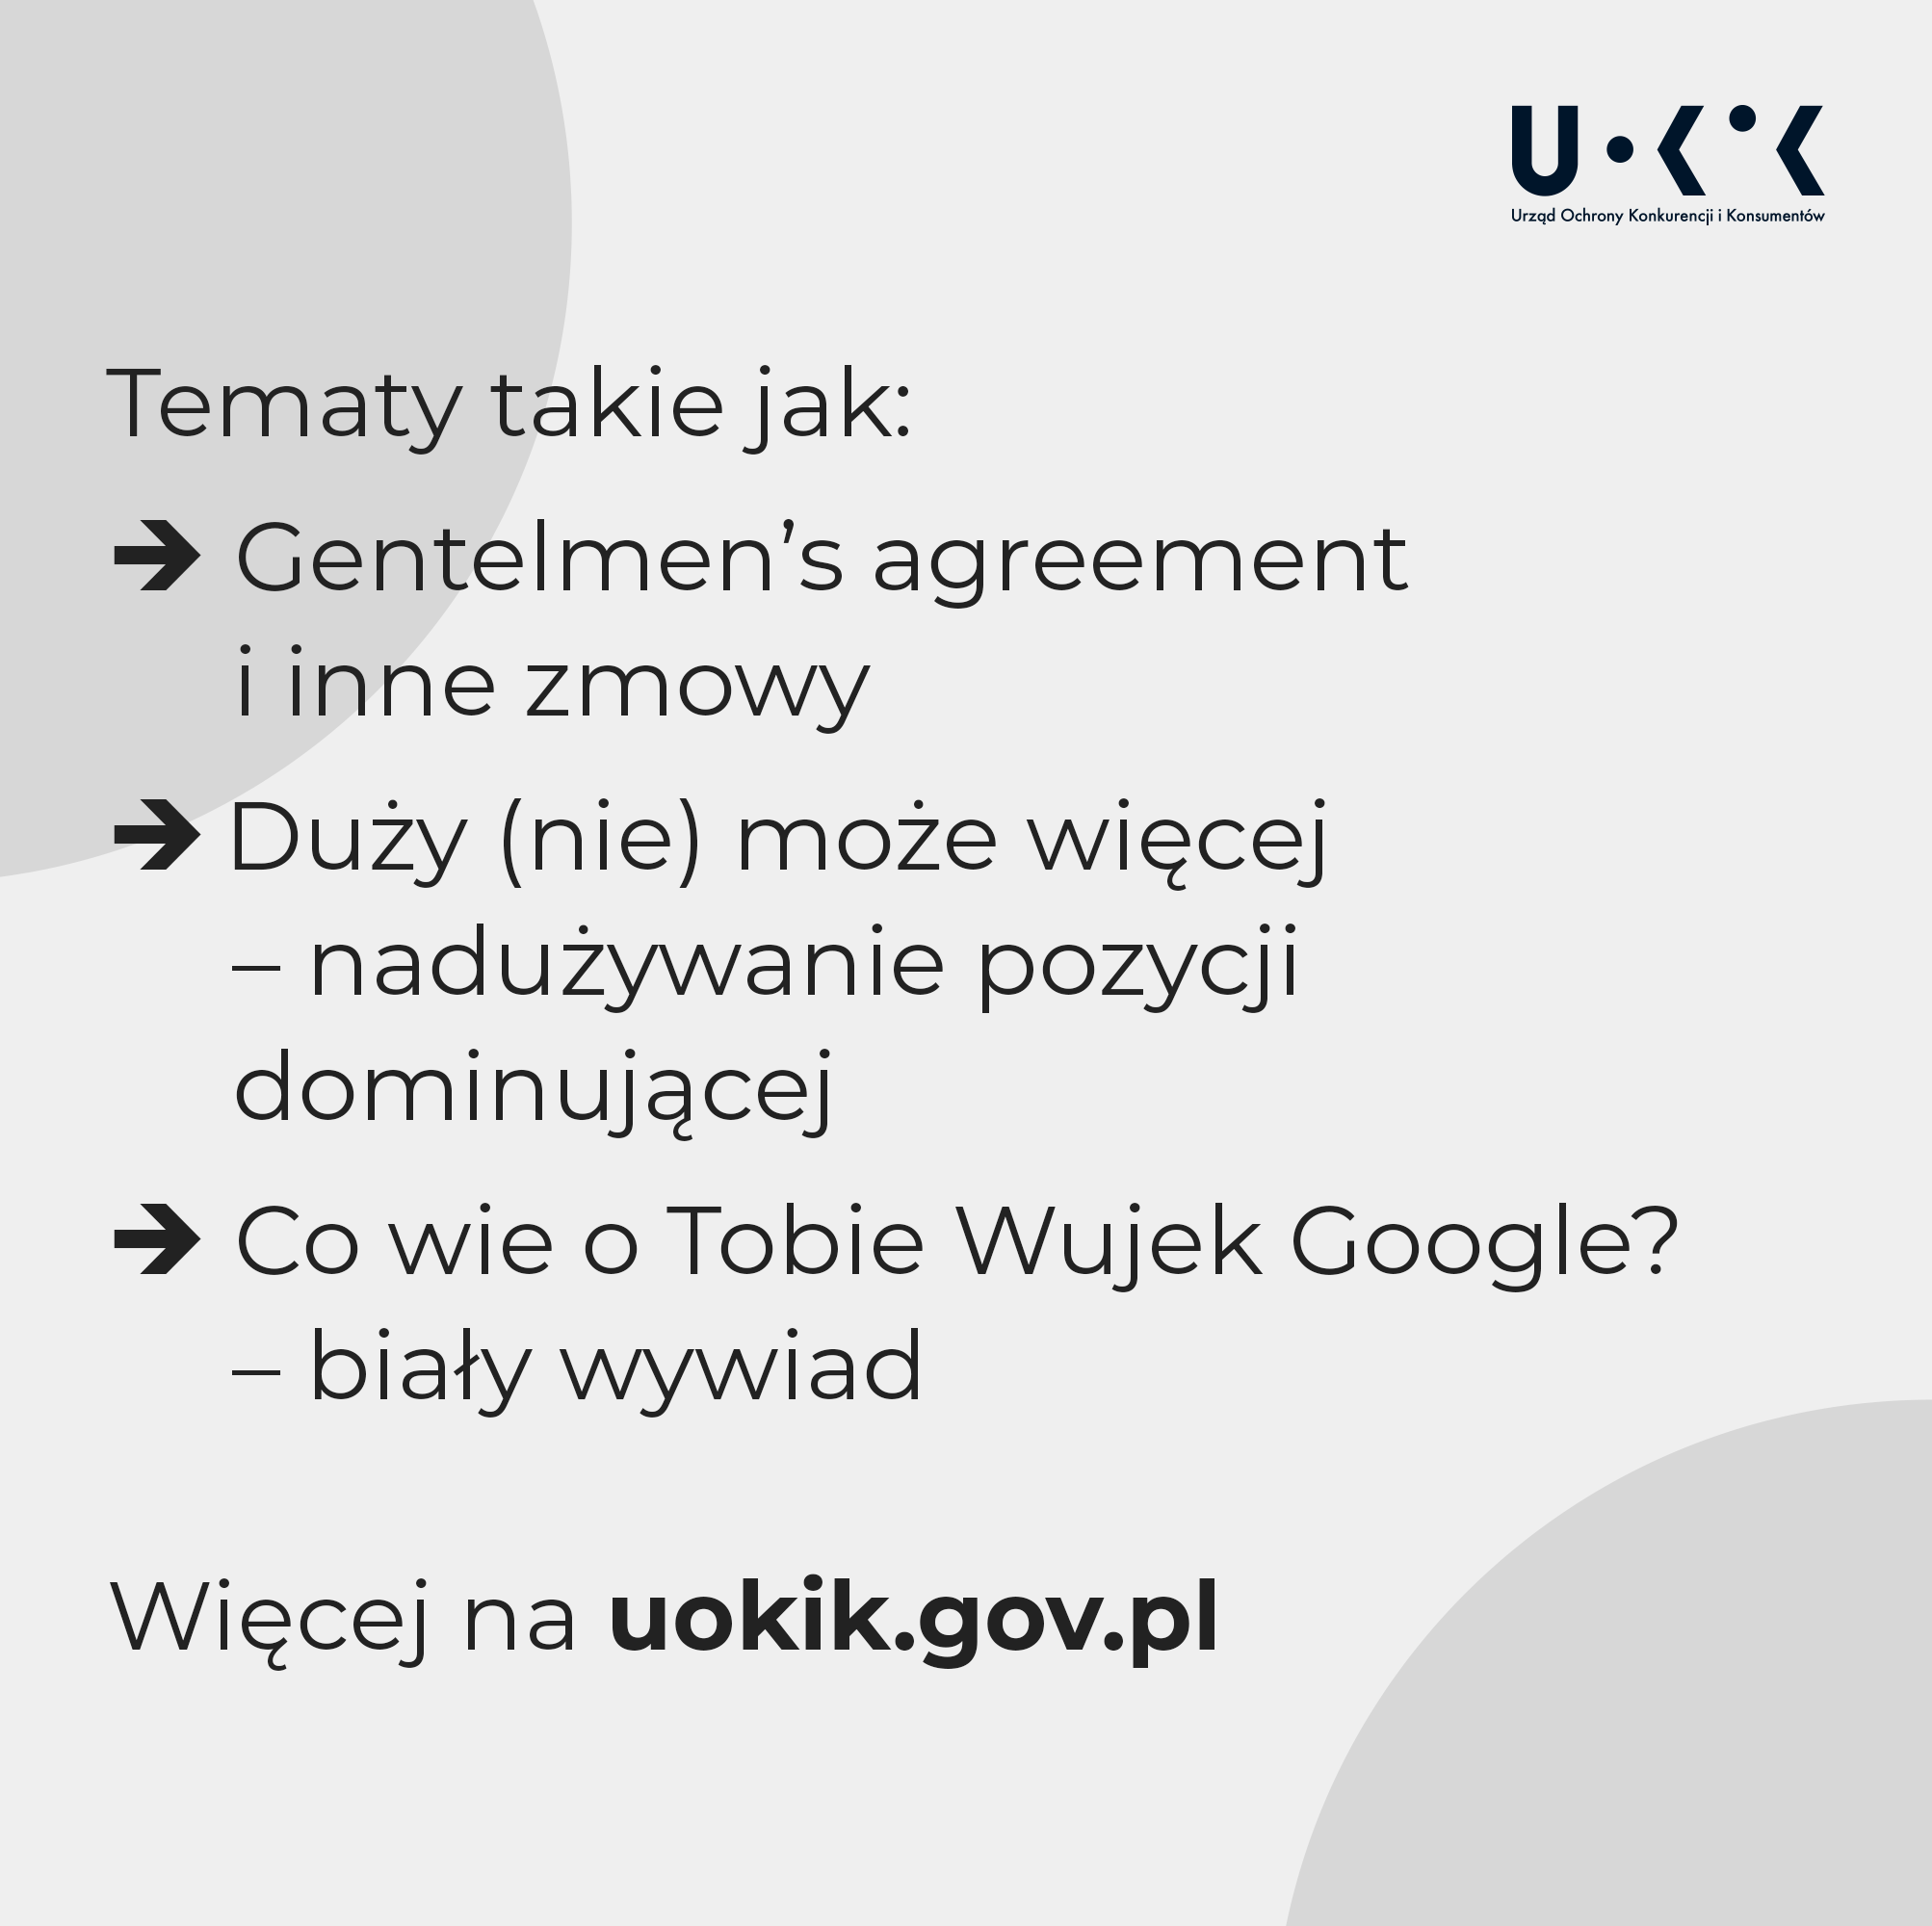 Tematy takie jak: Gentelmen's agreement i inne zmowy; Duży (nie) może więcej - nadużywanie pozycji dominującej; Co wie o Tobie Wujek Google? - biały wywiad. Więcej na uokik.gov.pl